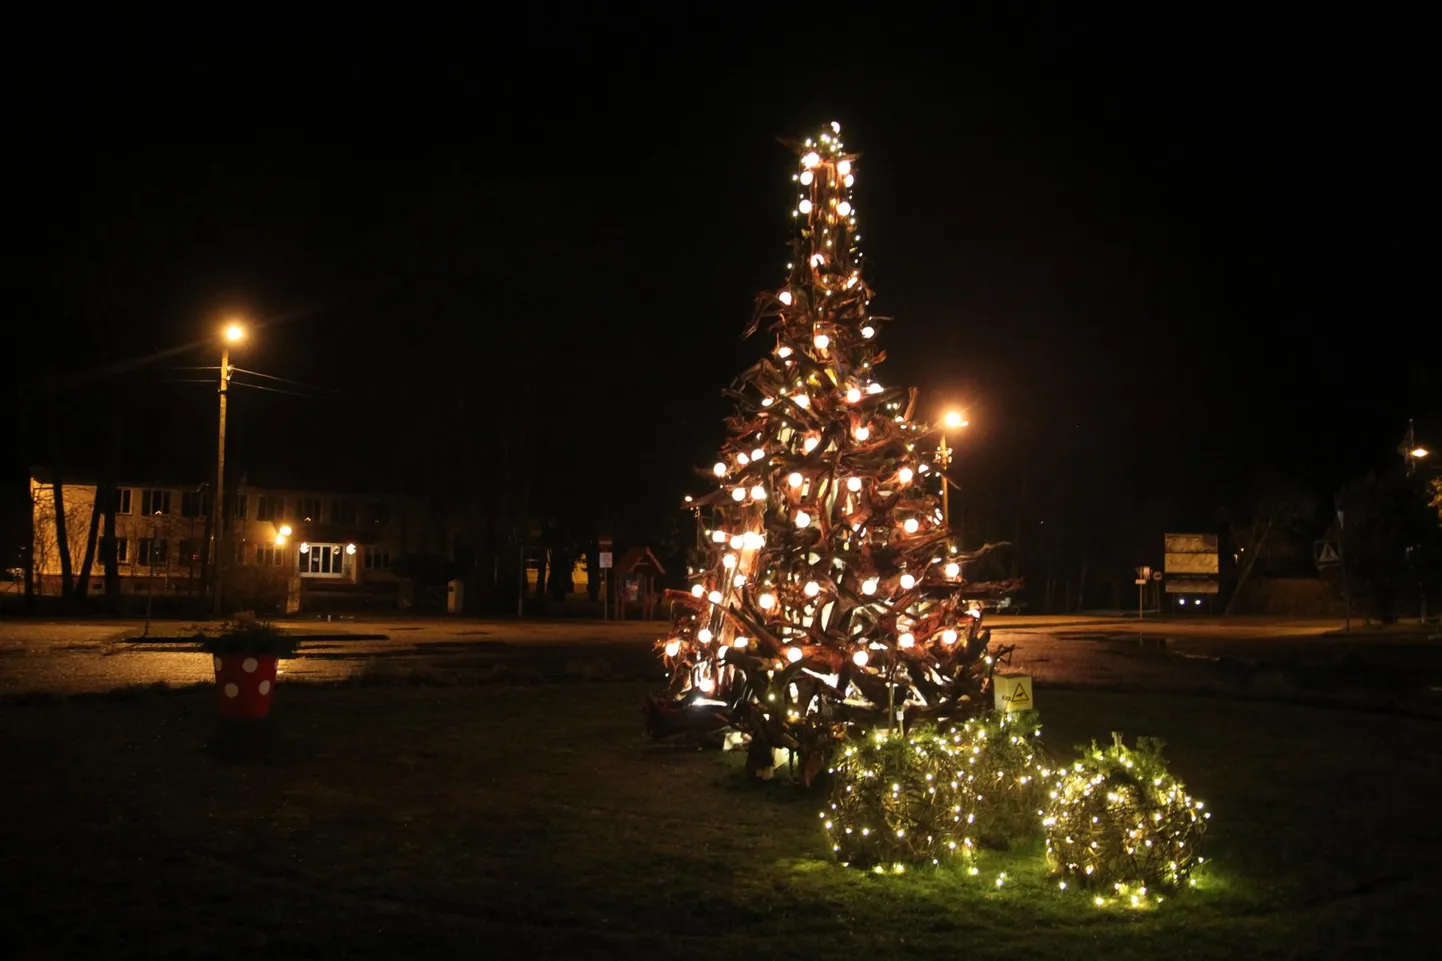 Kärdla jõulupuu on tehtud puujuurtest, mis sümboolselt kutsuvad hiidlasi tagasi oma juurte juurde. Taiese autorid on Lääne-Virumaa kunstnikud Hando Kuntro ja Piret Smagar, loomises lõi kaasa Teet Suur.